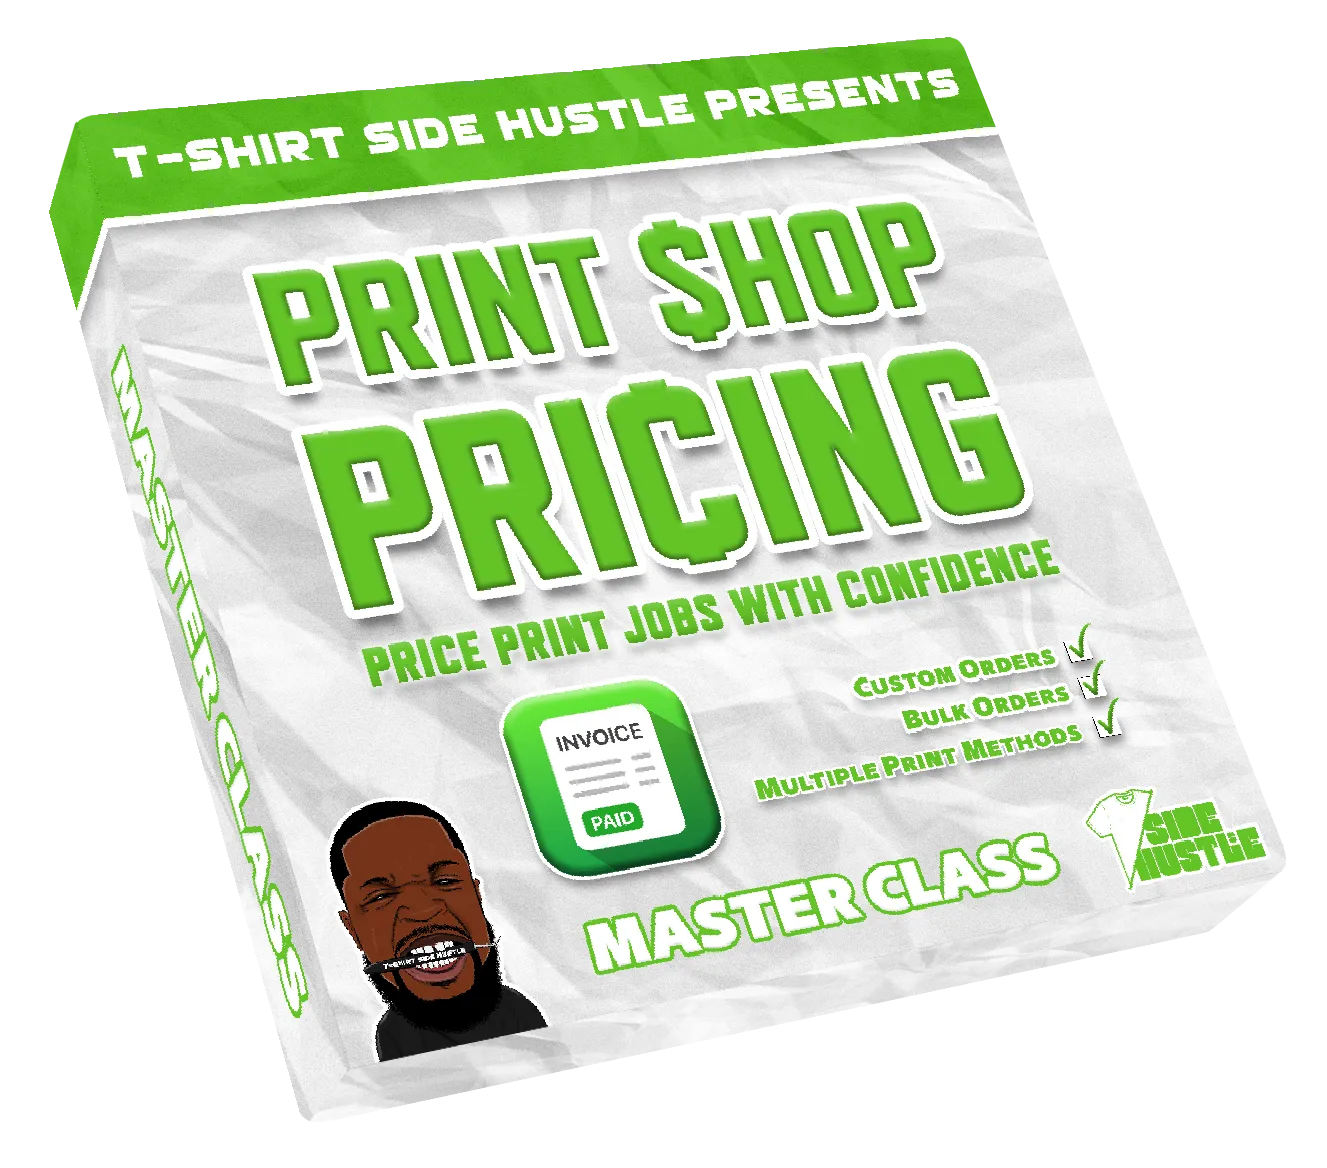 Printshop Pricing